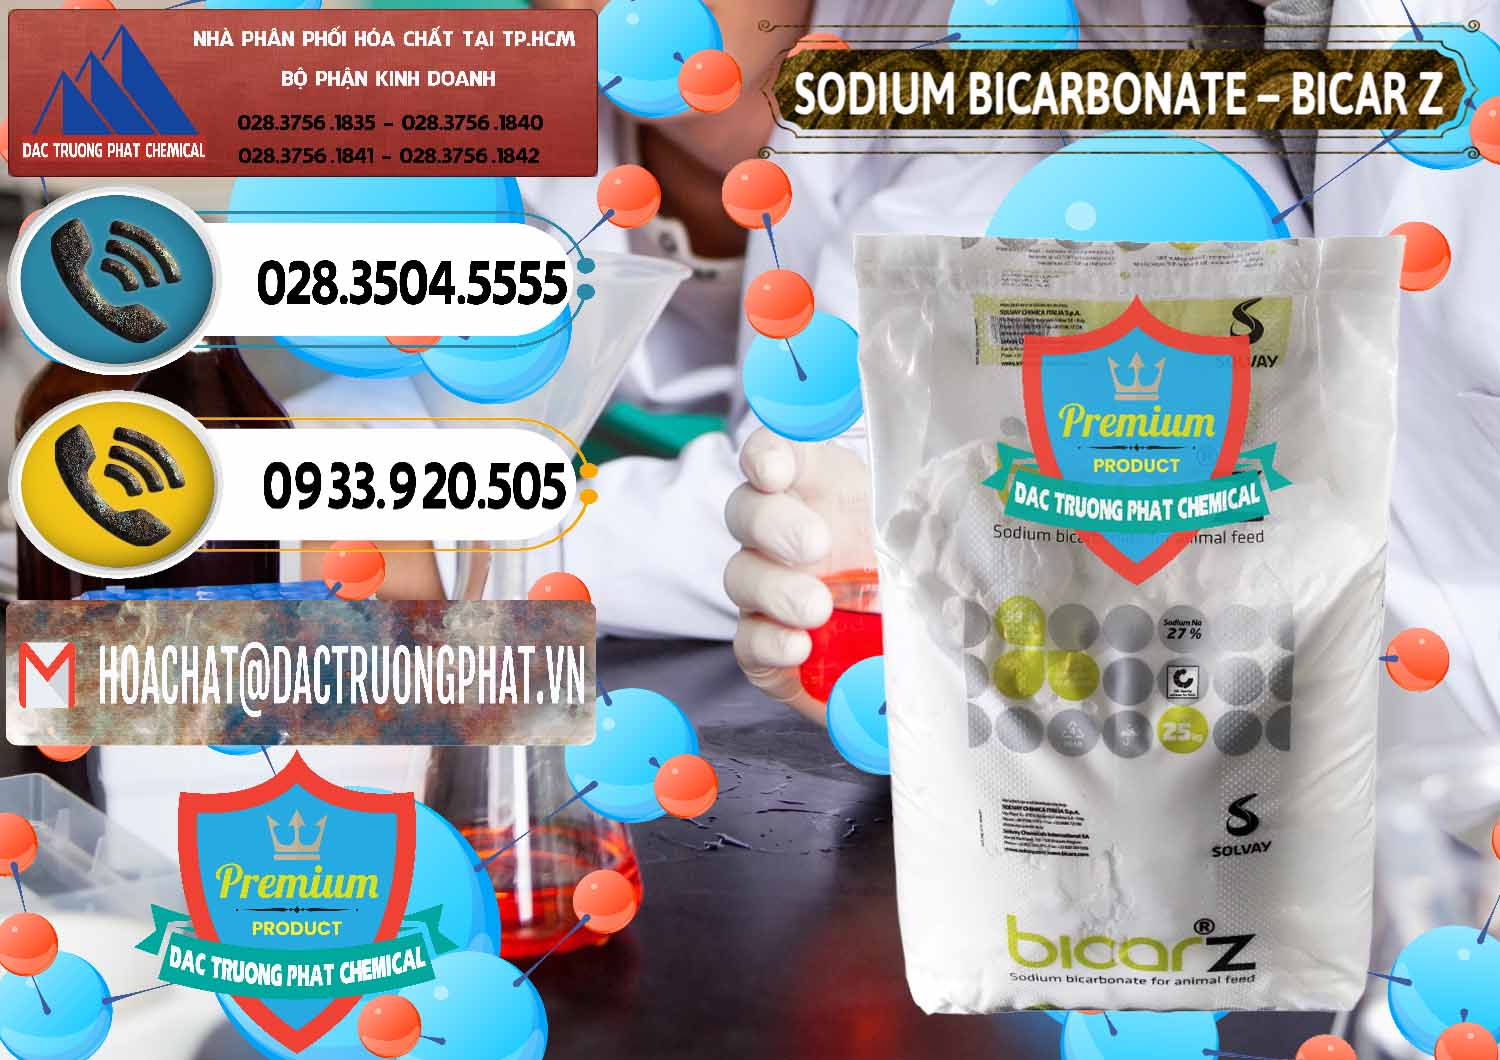 Đơn vị bán _ cung cấp Sodium Bicarbonate – NaHCO3 Bicar Z Ý Italy Solvay - 0139 - Cung cấp - bán hóa chất tại TP.HCM - hoachatdetnhuom.vn